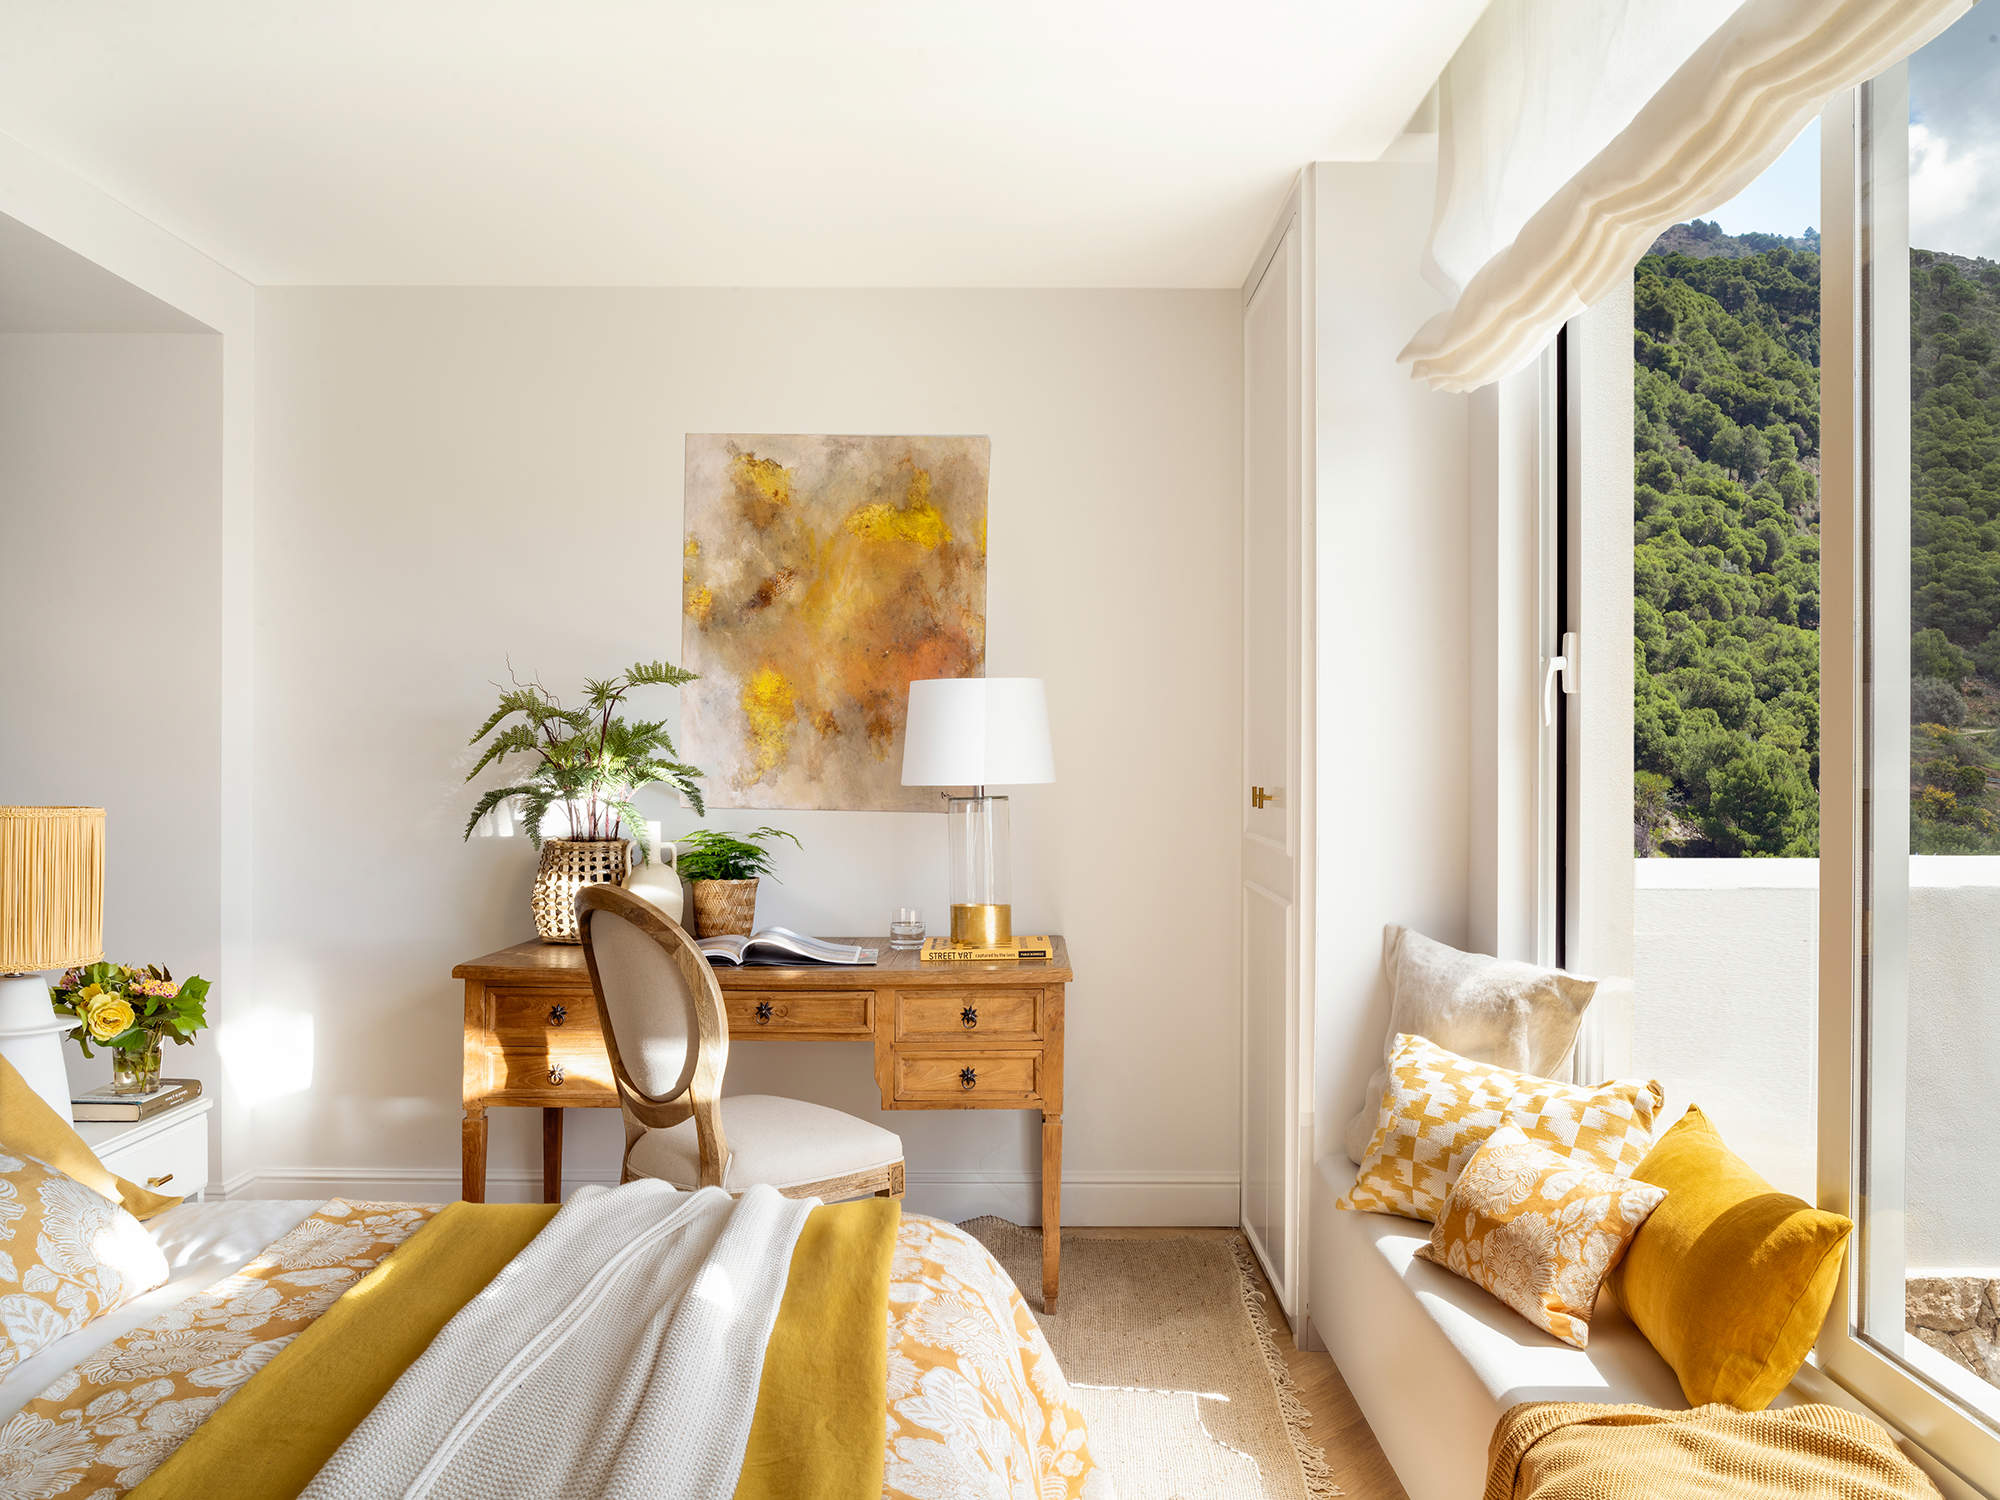 Dormitorio en tonos blancos y amarillos con rincón de trabajo.